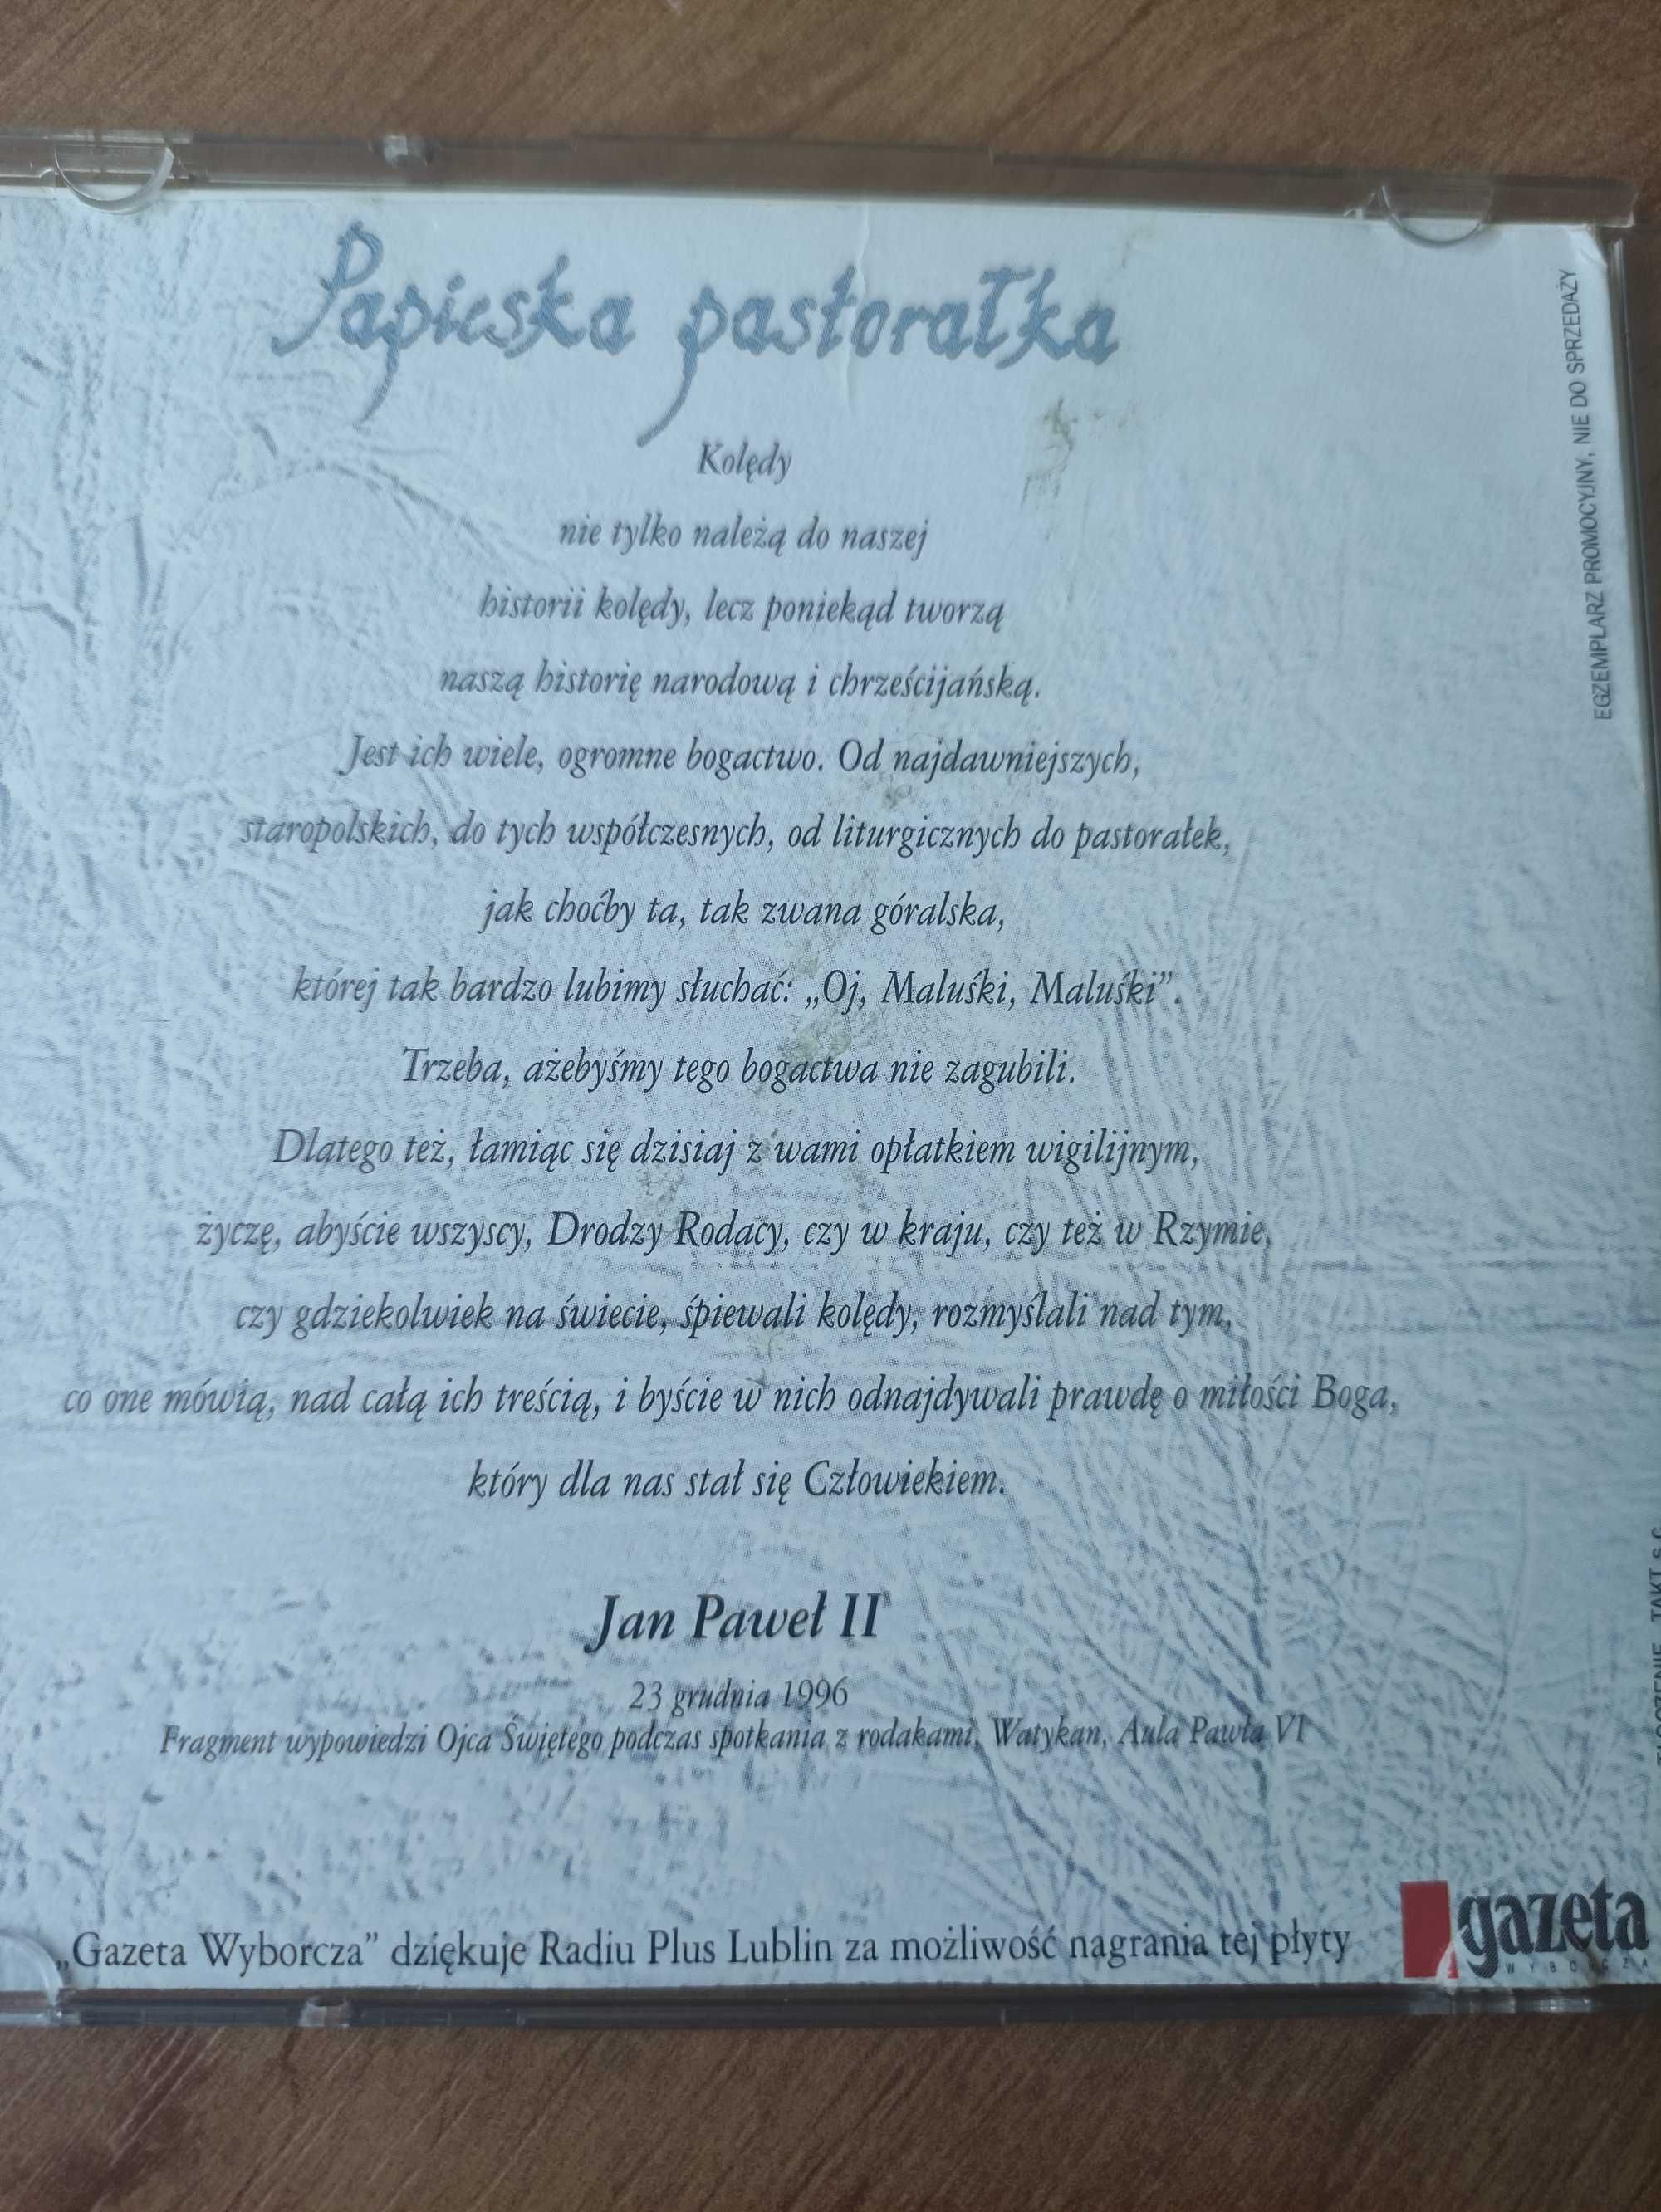 Płyta CD Papieska pastorałka. Jan Paweł ll śpiewa Oj maluśki